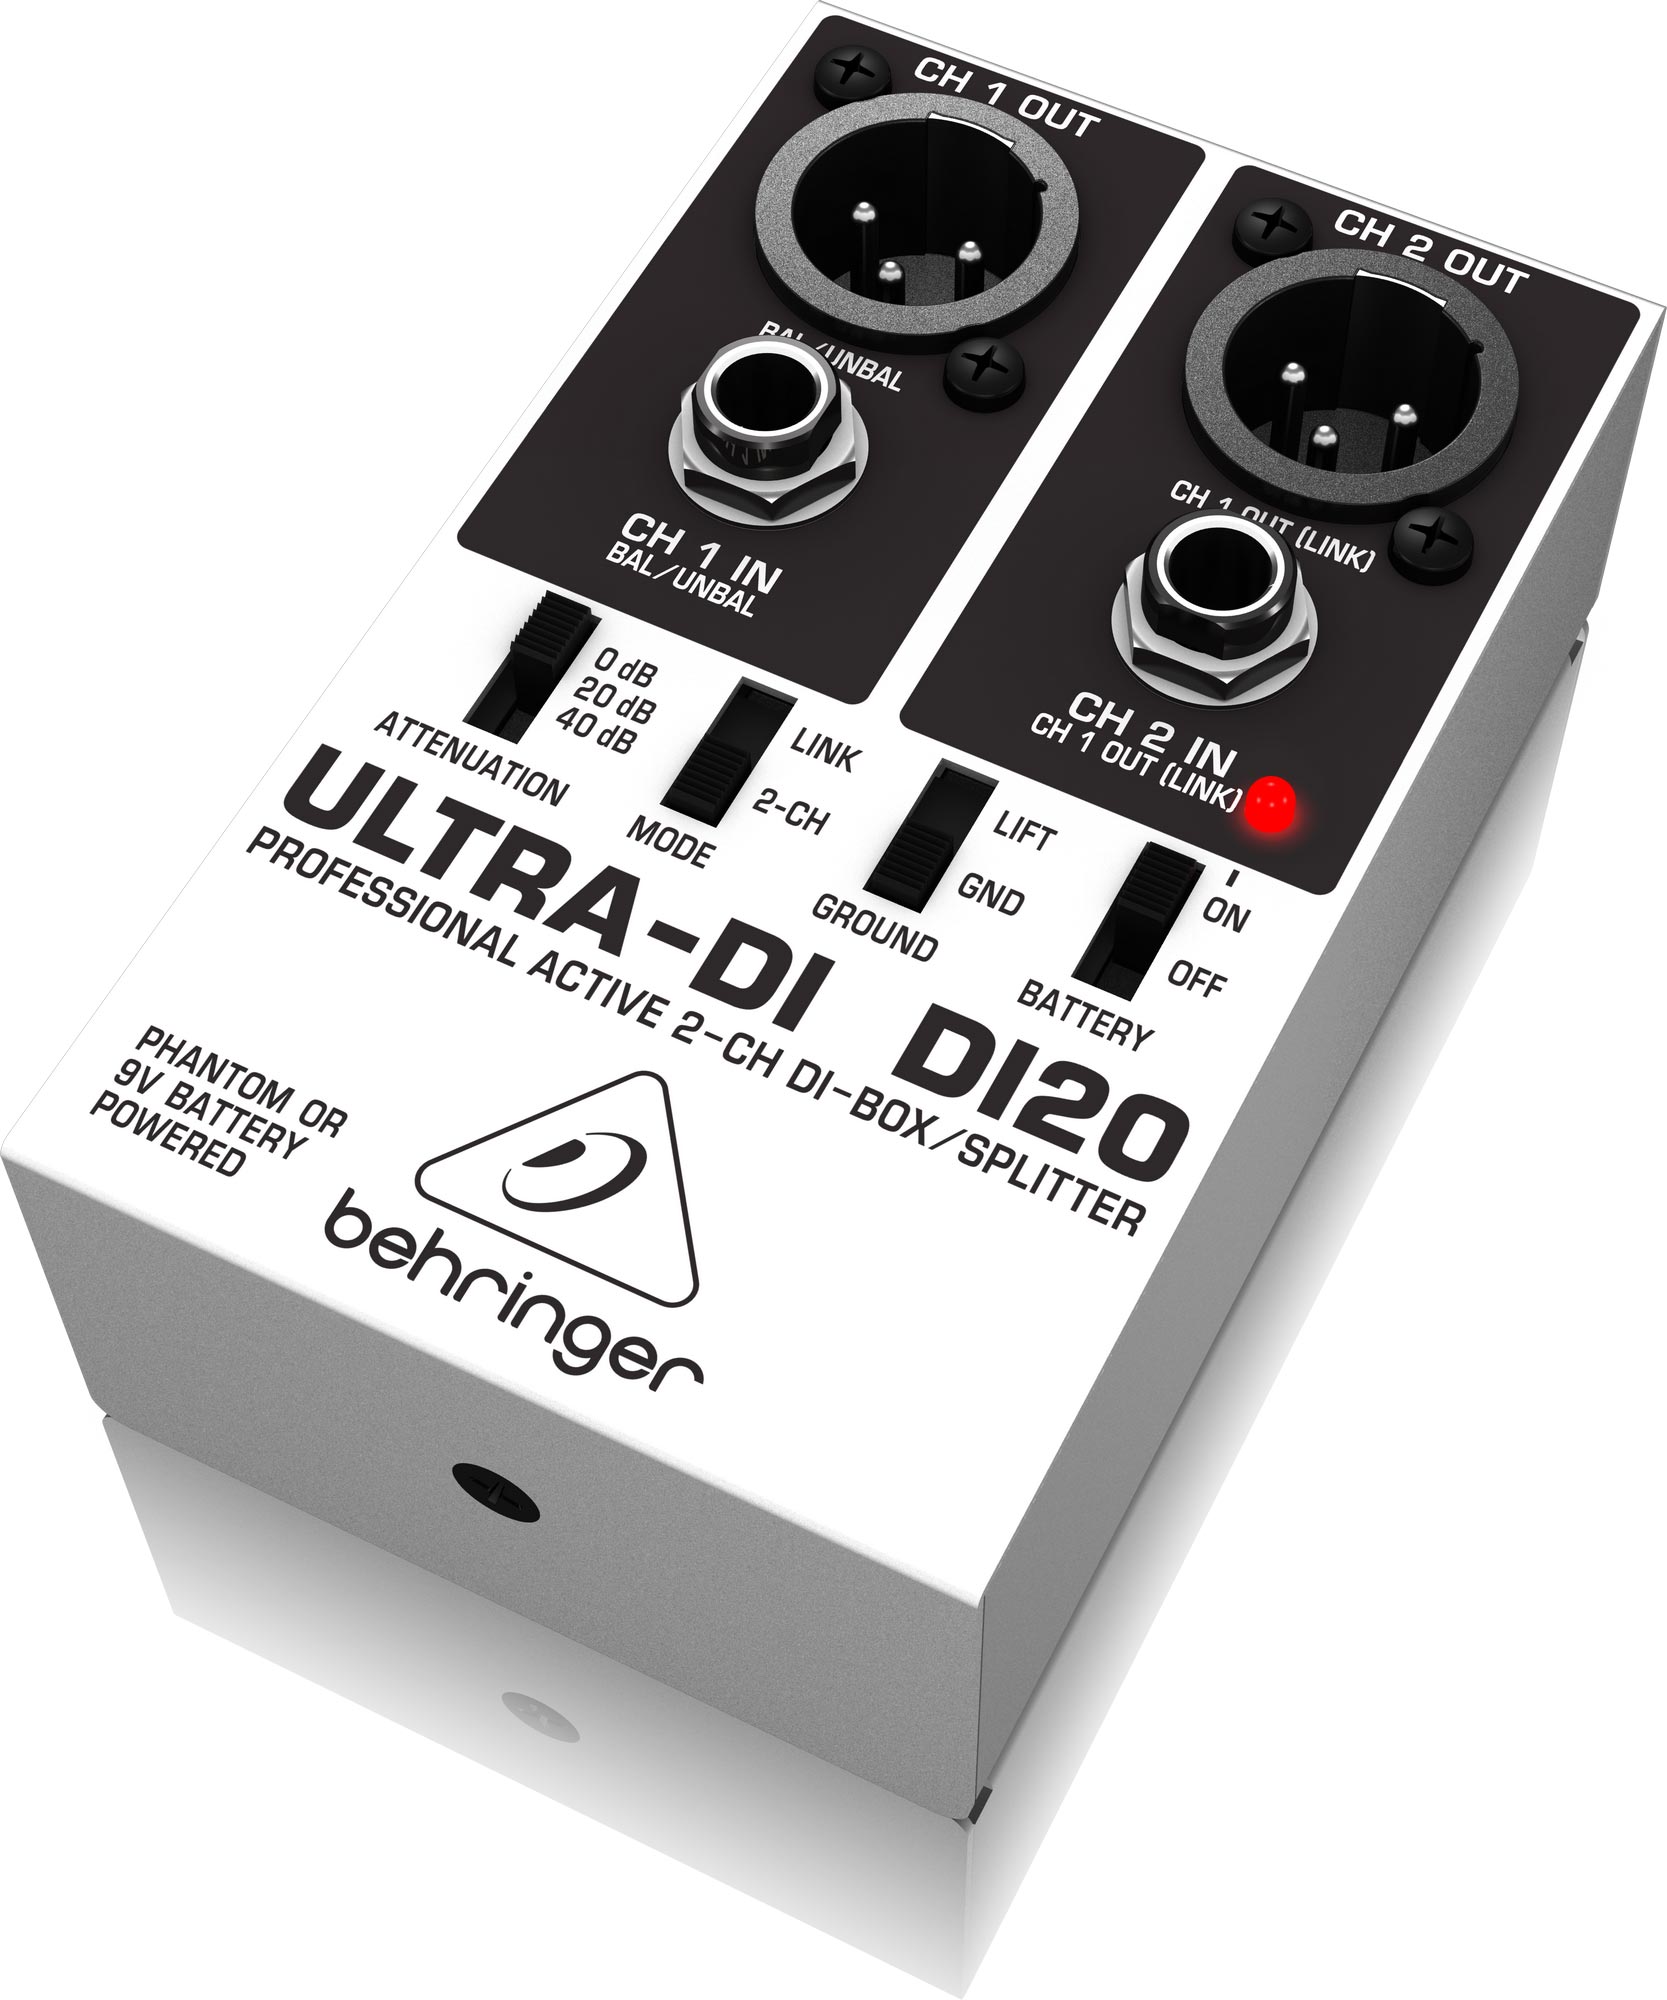 DI-Box/Splitter ULTRA-DI behringer DI20